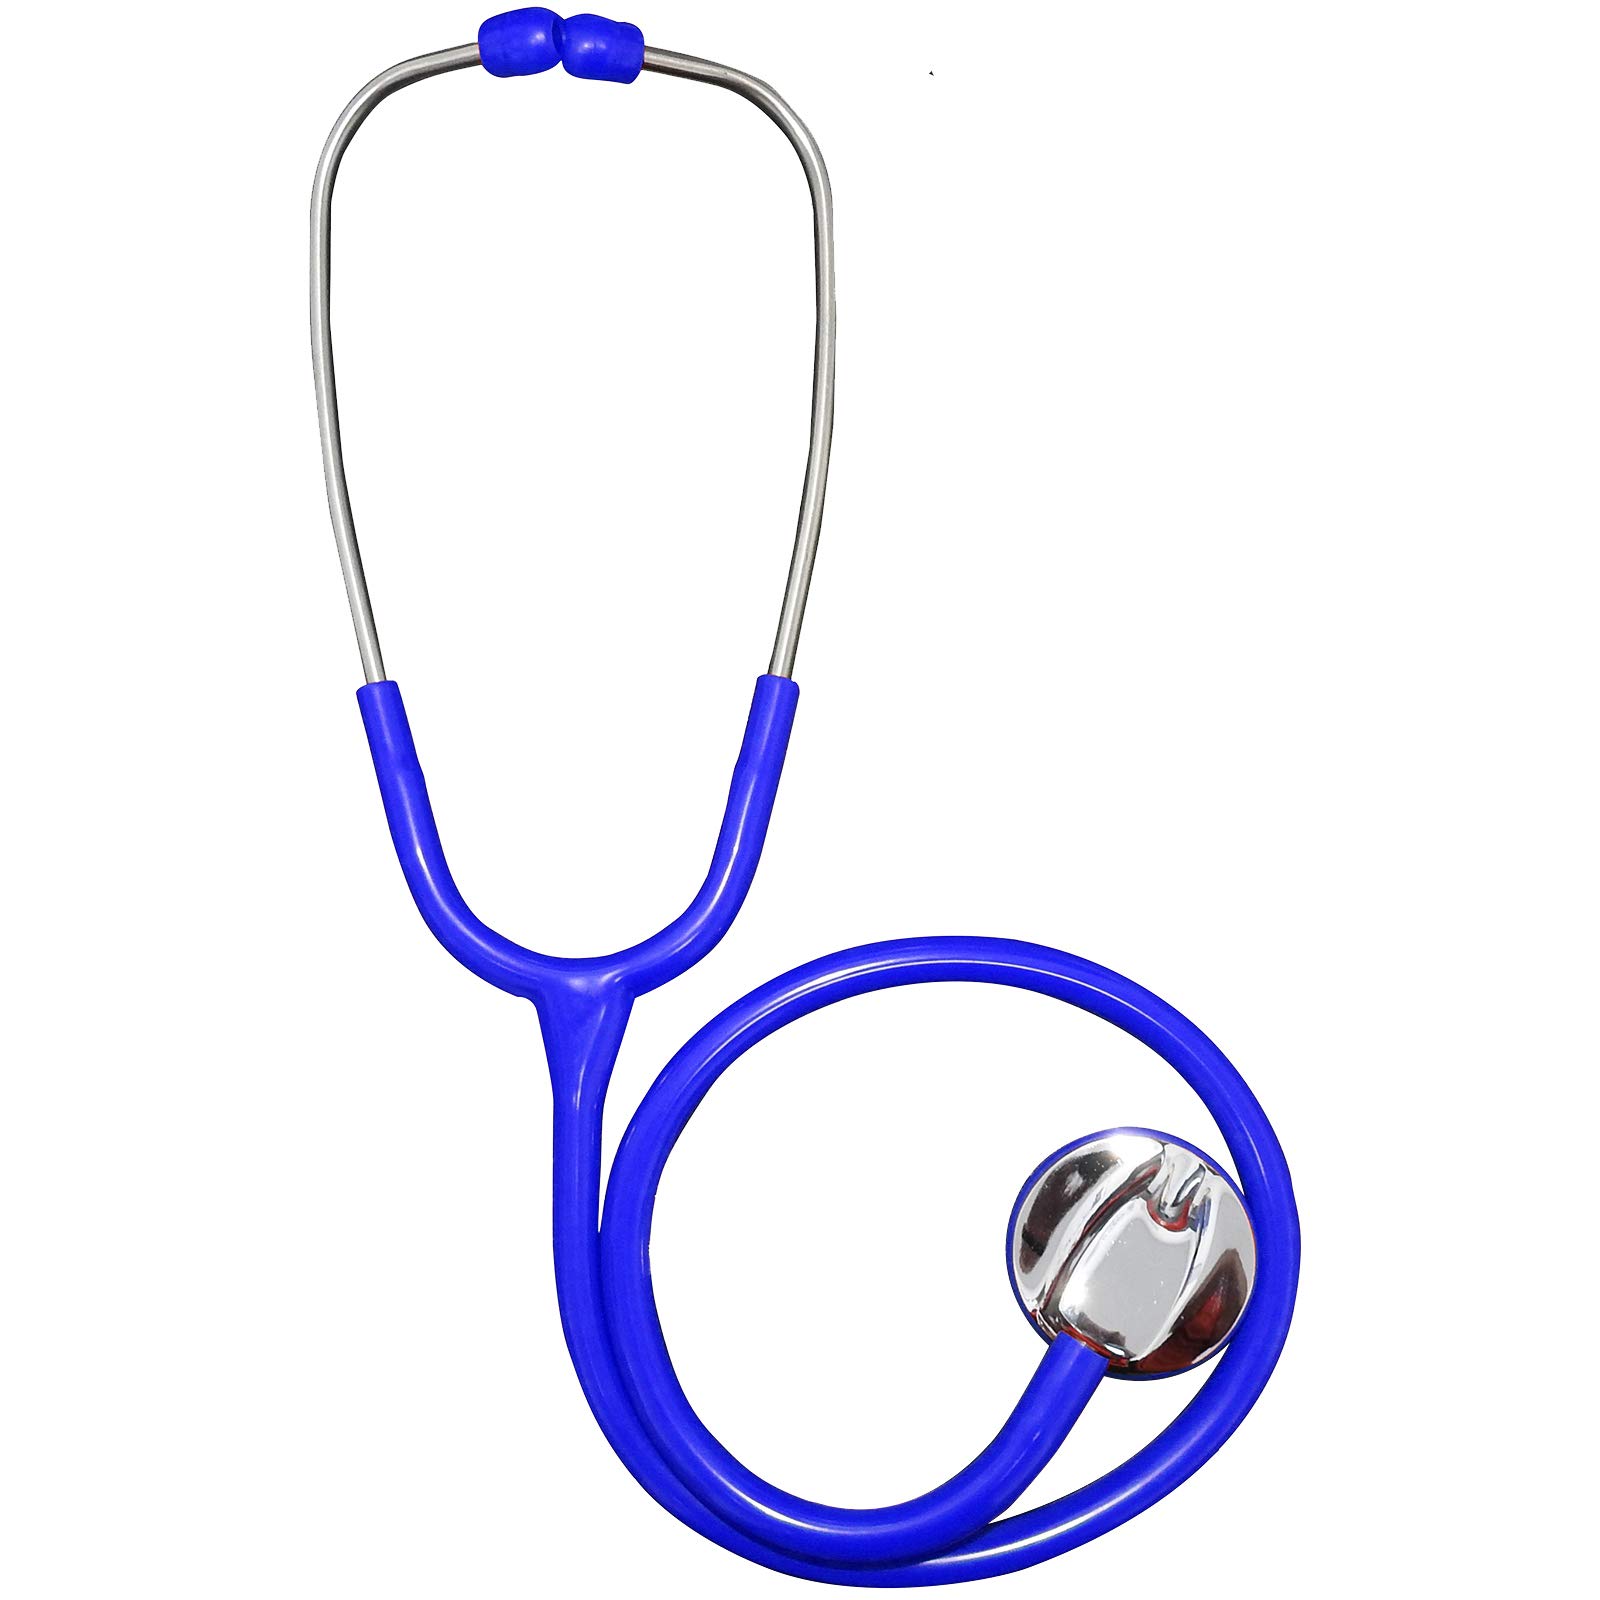 Stethoskop, Edelstahl, Kardiologie, EMT, Einzelkopf, für Ärzte, Krankenschwestern, mit Schaumstofffutter, Tragetasche + Ersatzbox, Blau